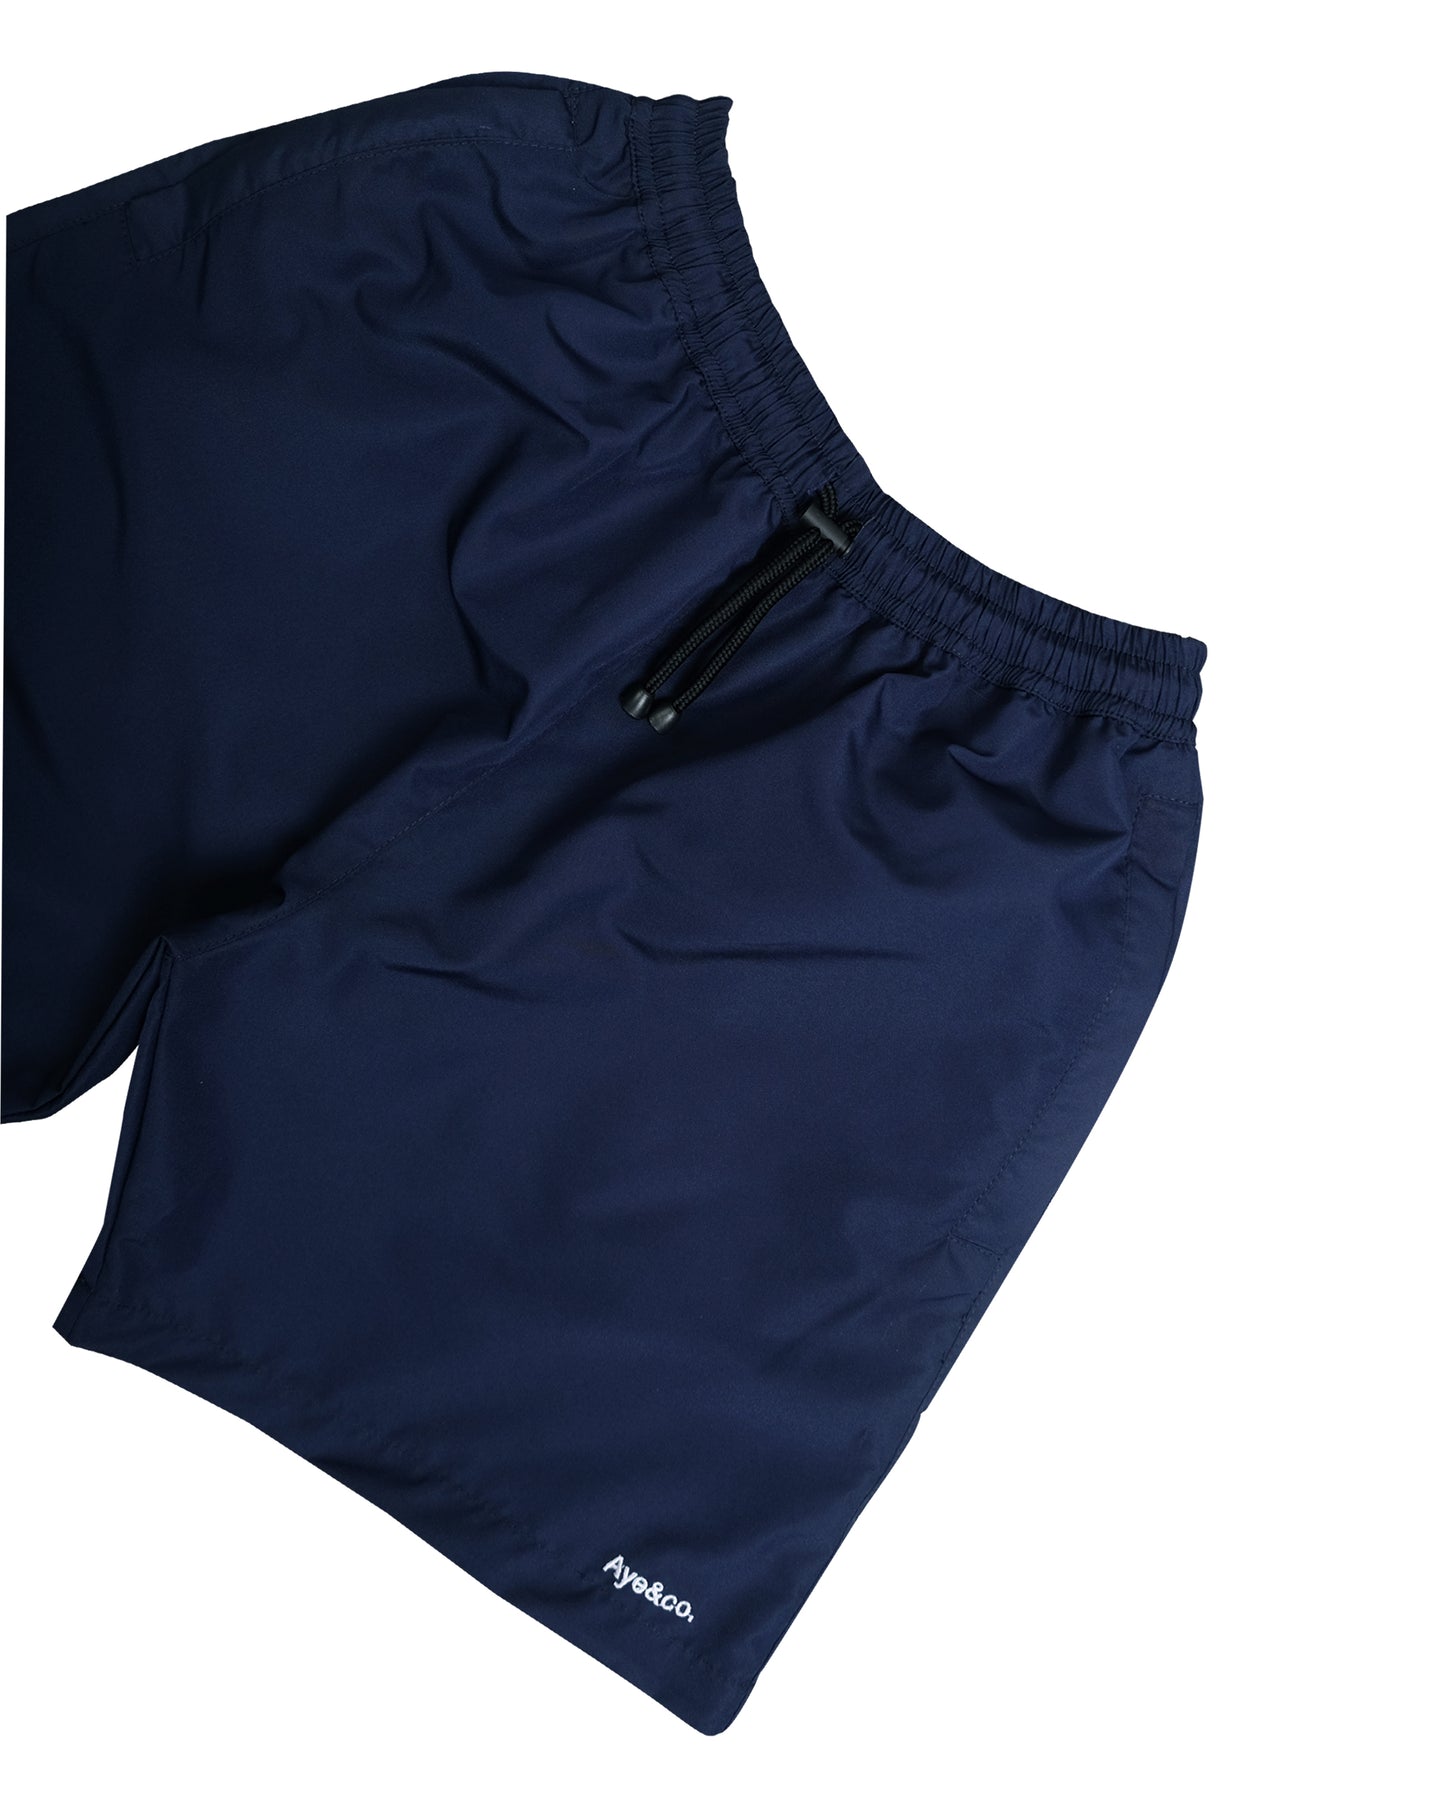 Lax Navy Board Shorts